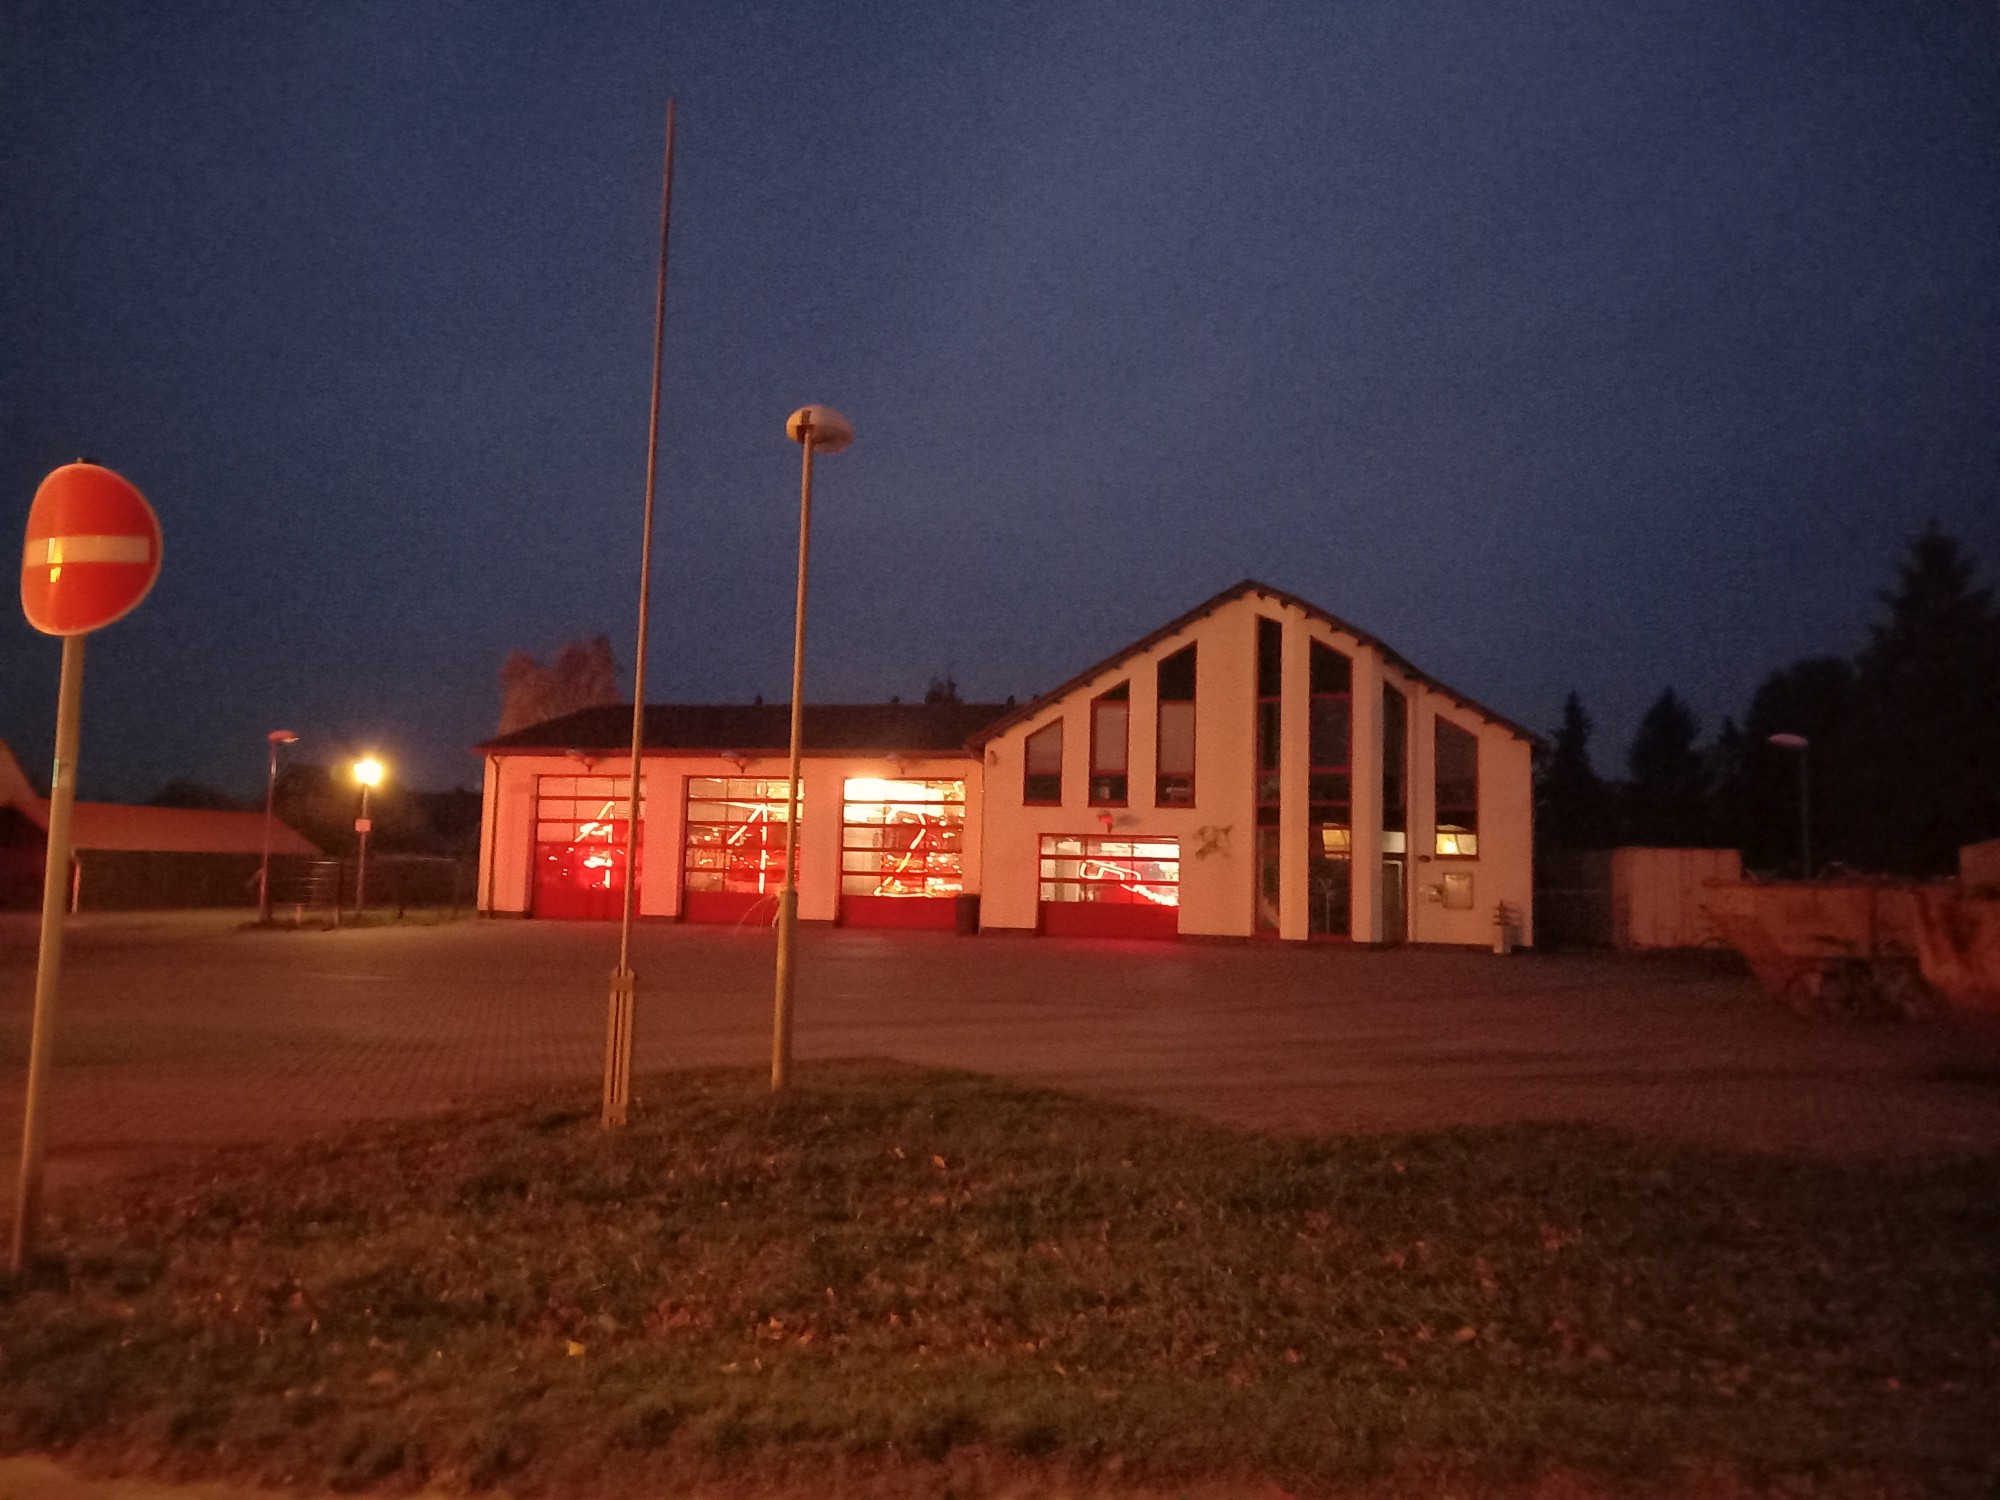 Feuerwehrhaus Rövershagen mit Lichterkette in Form der 112